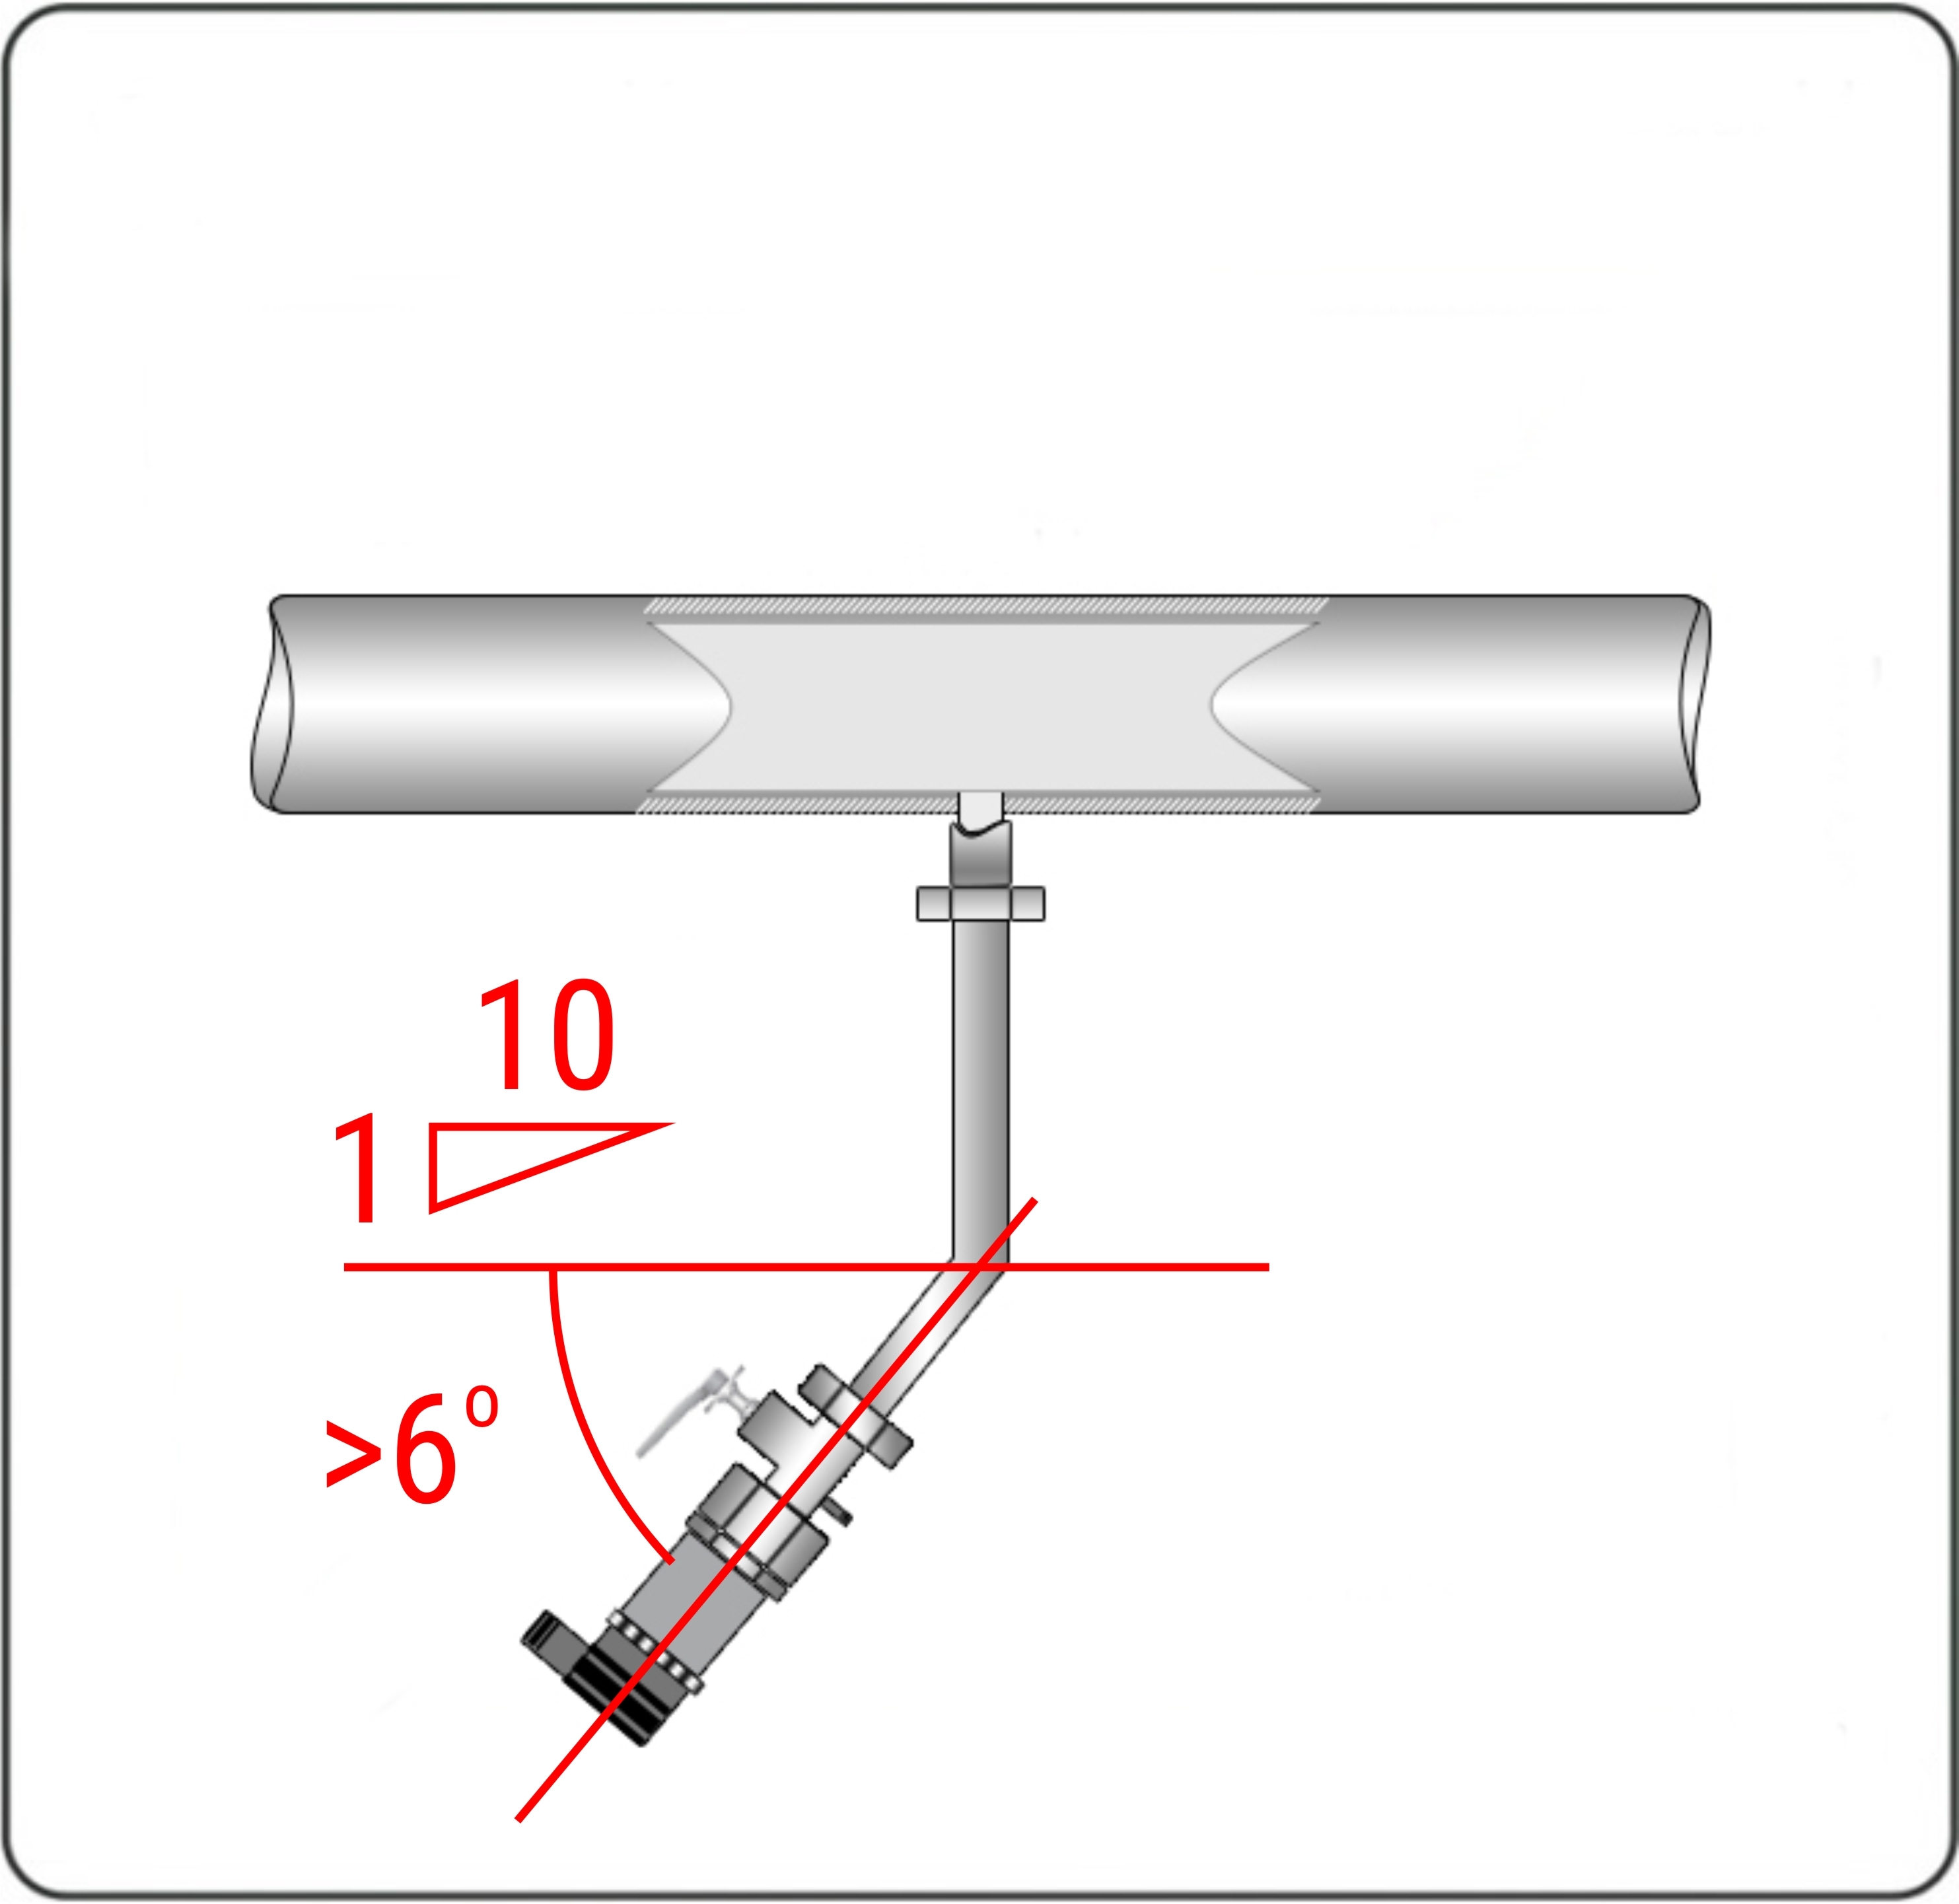 Соединительные трубопроводы должны иметь односторонний уклон (не менее 1:10 или ~6о) от места отбора давления вниз к датчику.